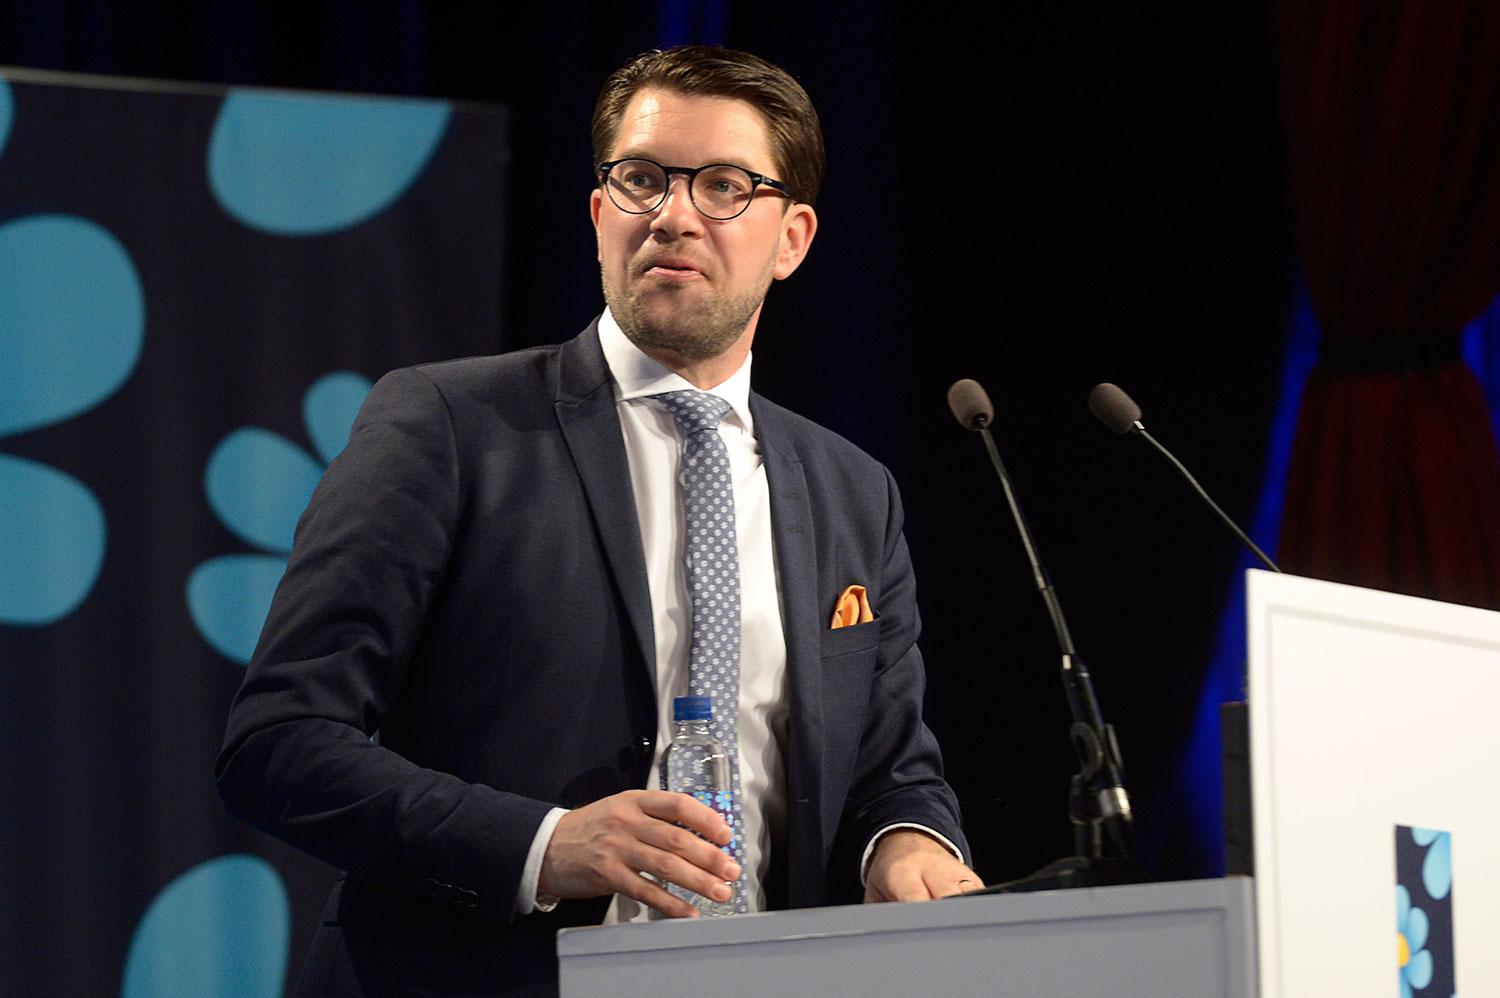 SD:s väljare misstror tidningar och journalister och förlitar sig i högre grad än andra på alternativa medier enligt Aftonbladet/Inizios undersökning.